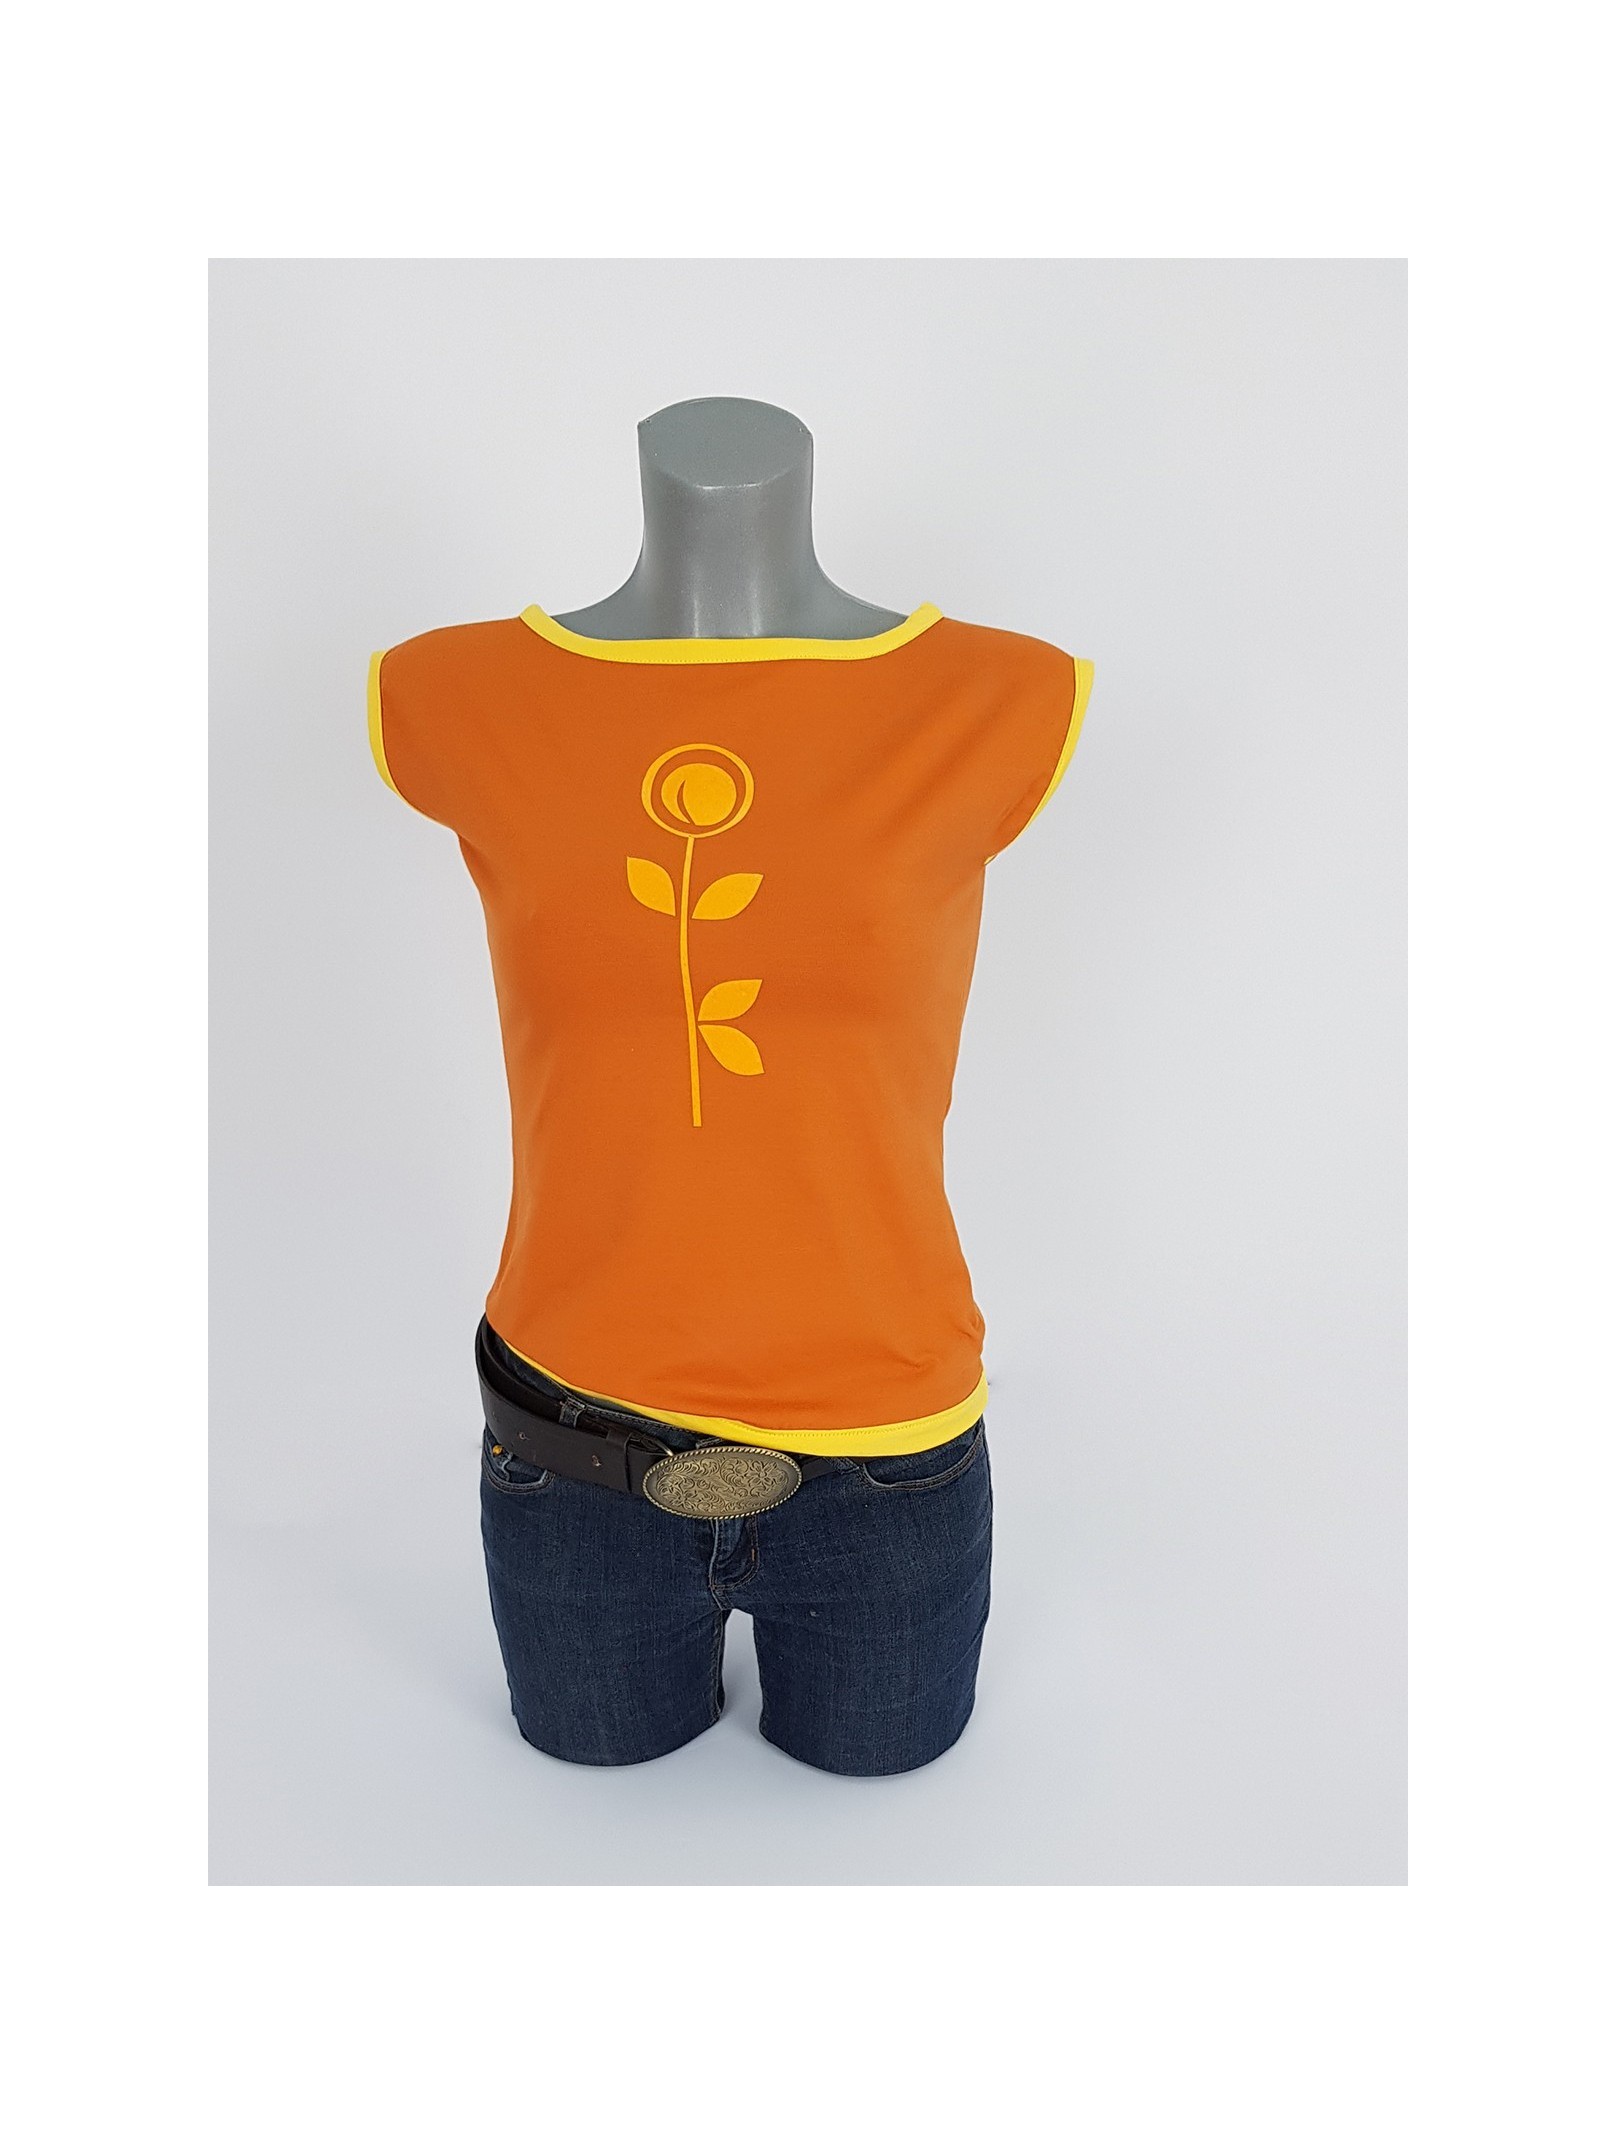 Damen T-Shirt in Gebrannte Orange und Safran Gelb